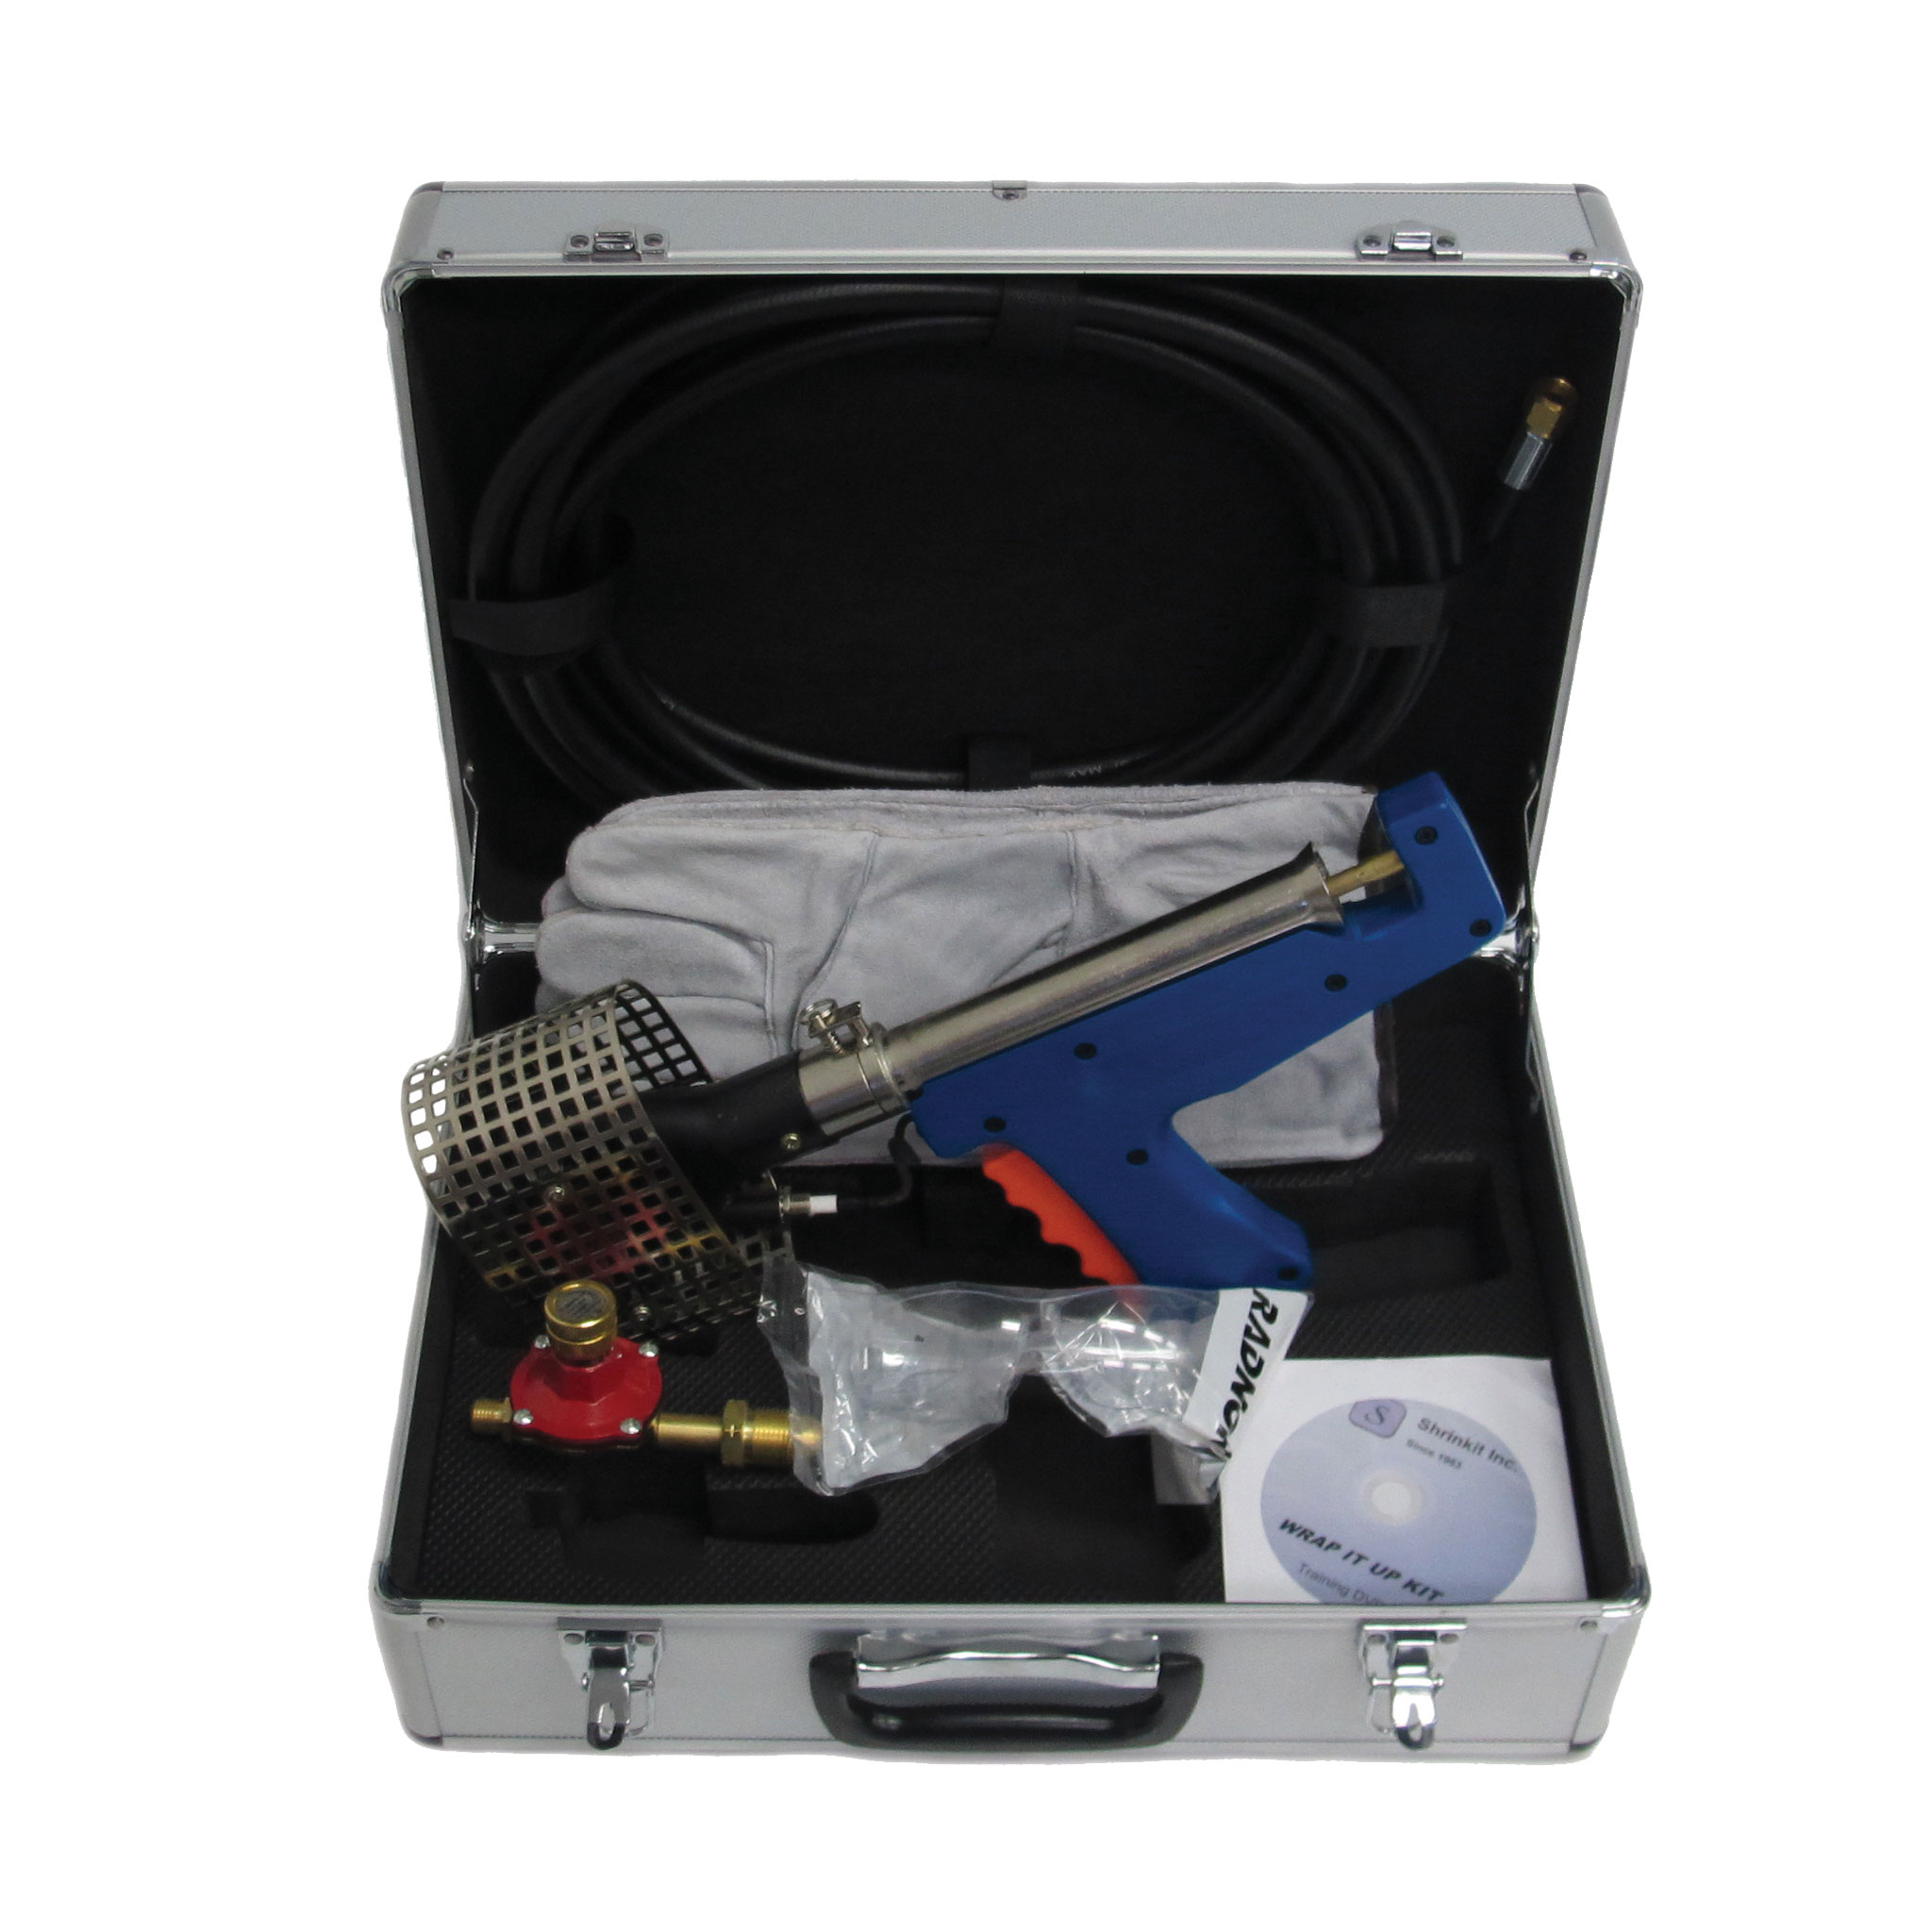 Heat Gun for Shrink Wrapping Kit - CDROM2GO